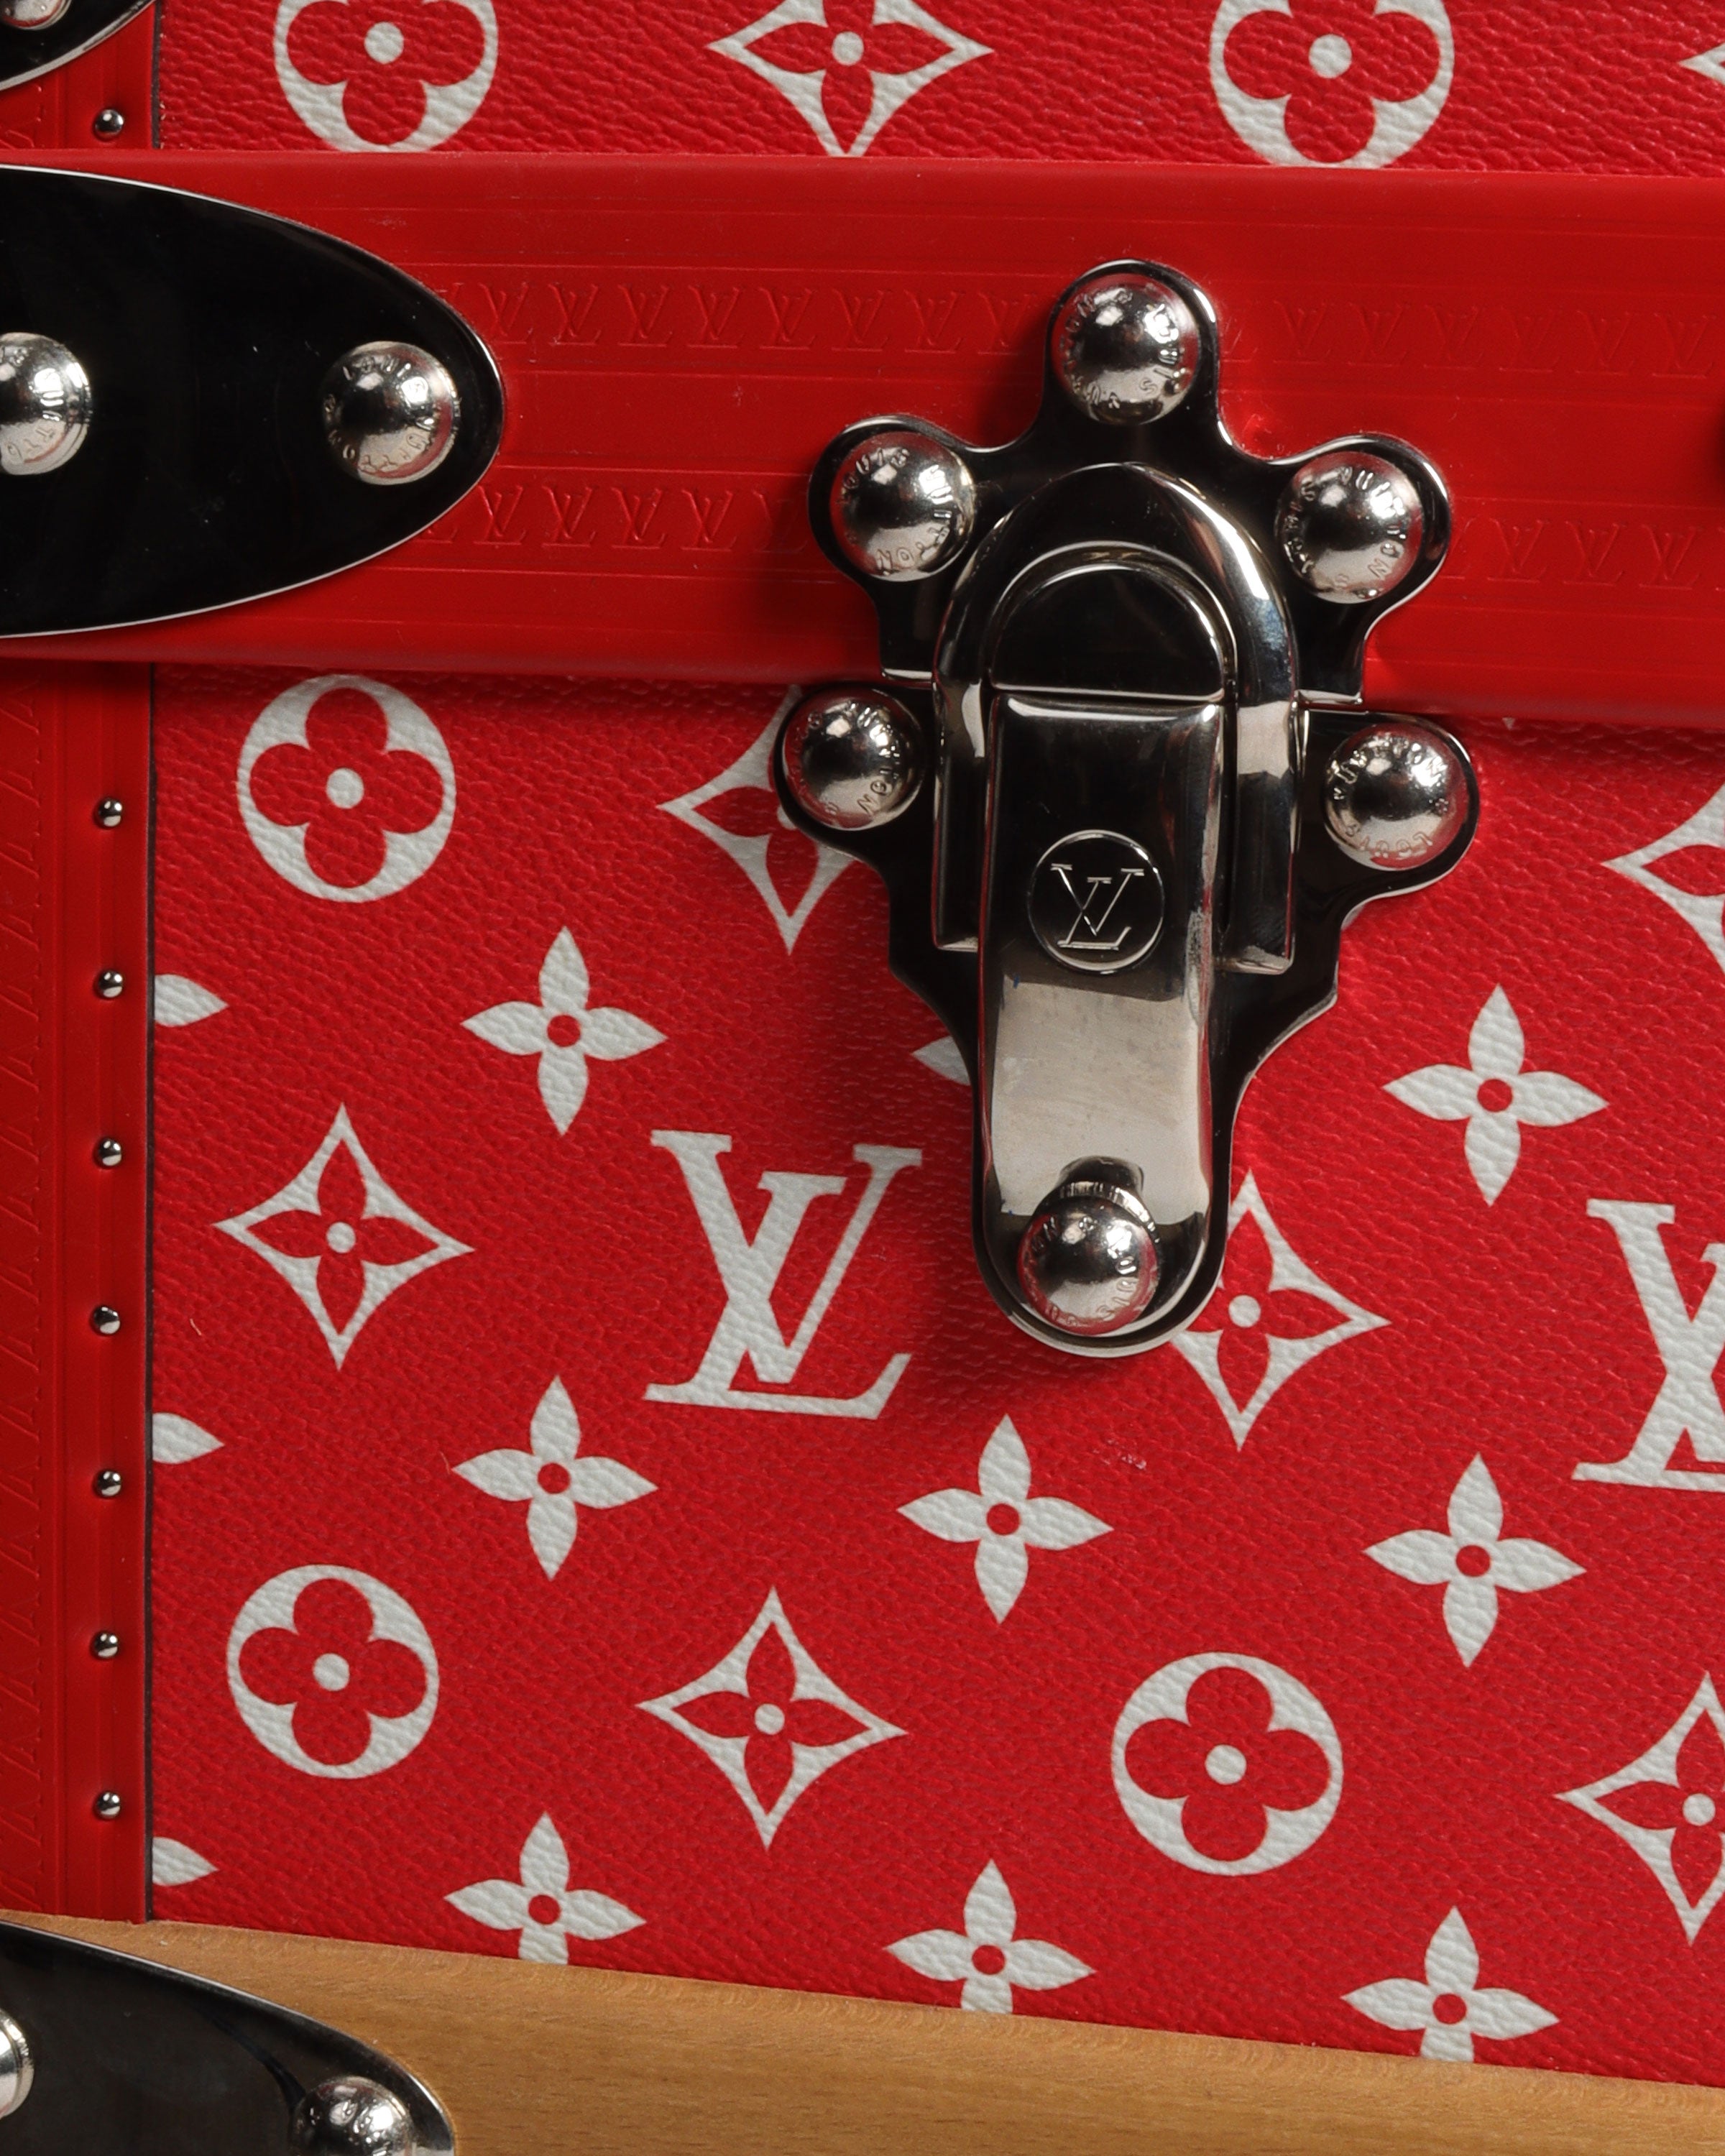 Louis Vuitton Supreme Red Monogram Malle Courrier 90 Steamer Trunk